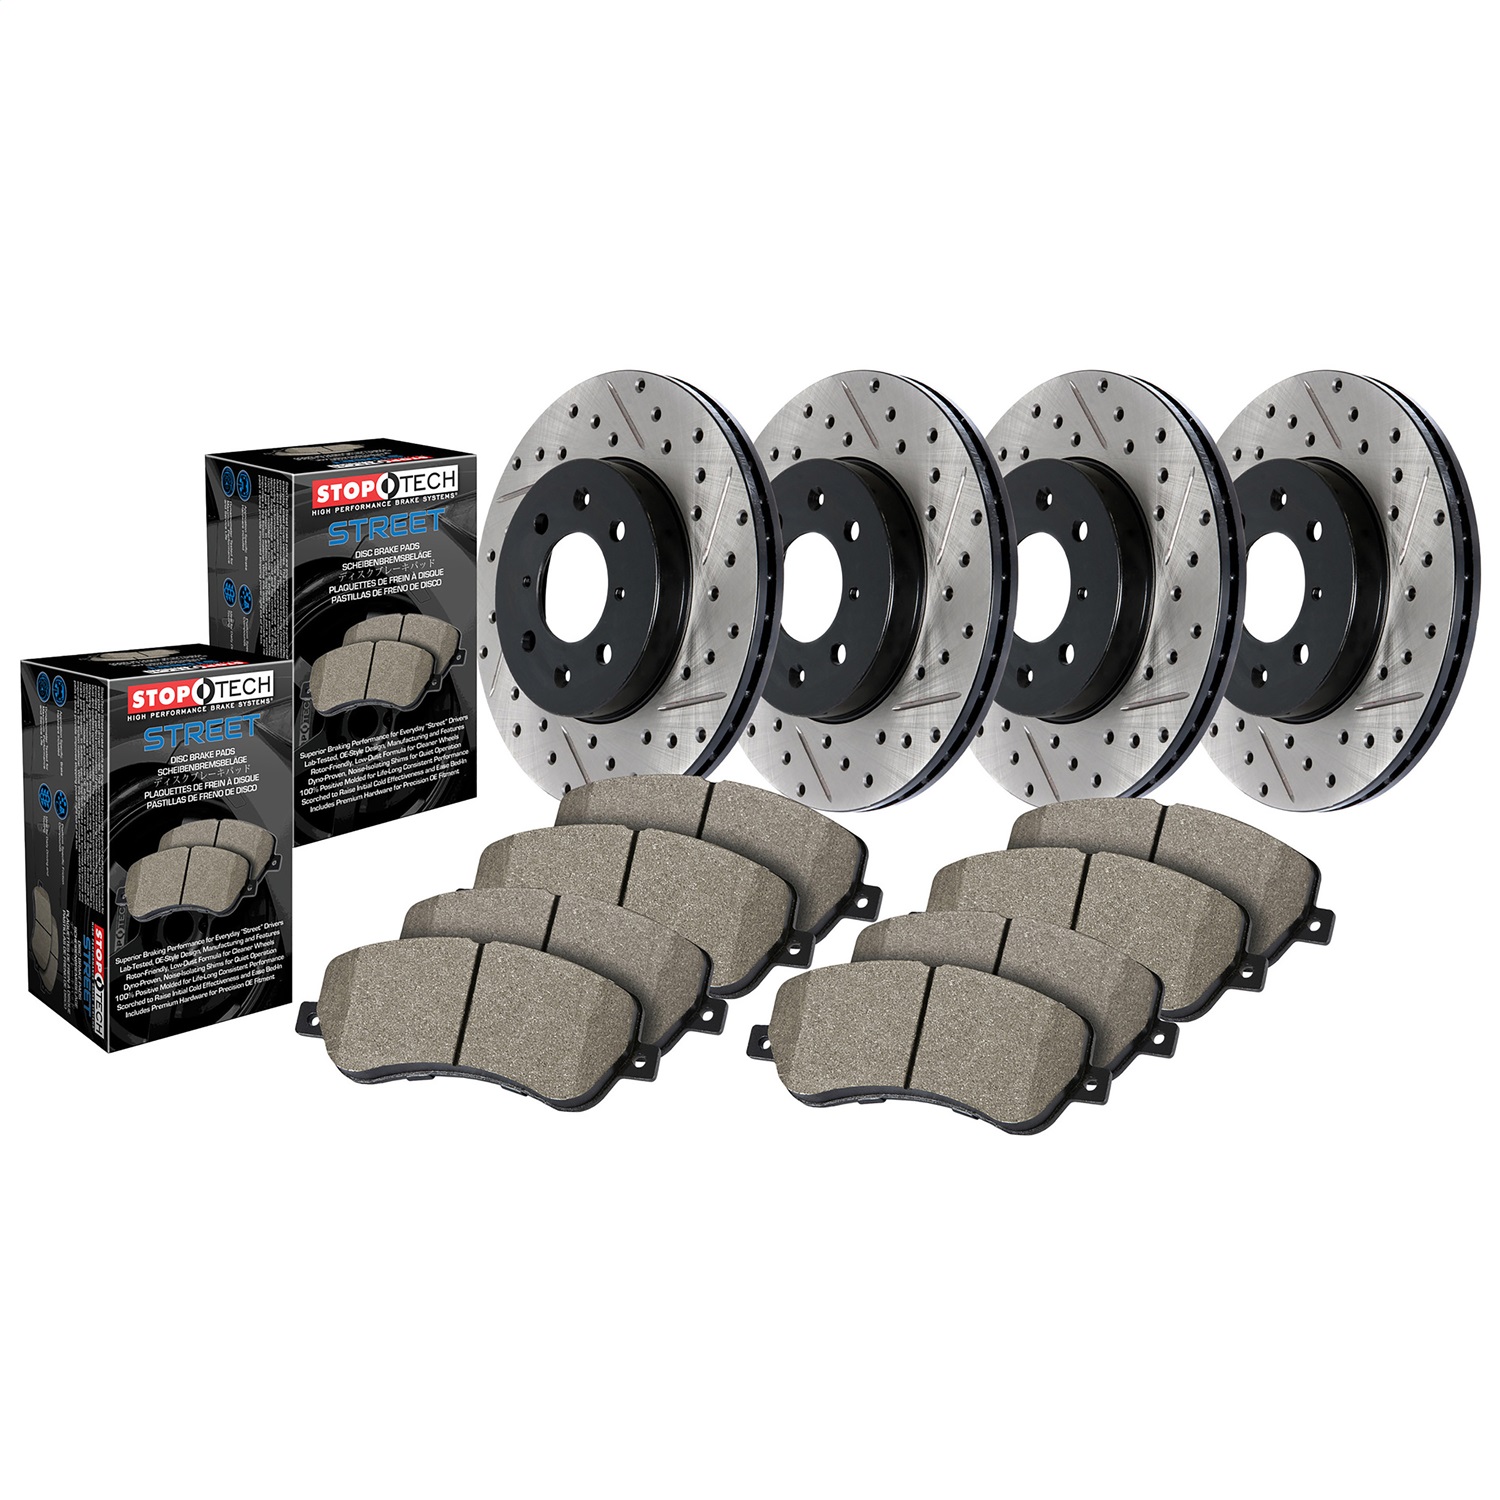 StopTech 935.66016 Disc Brake Upgrade Kit